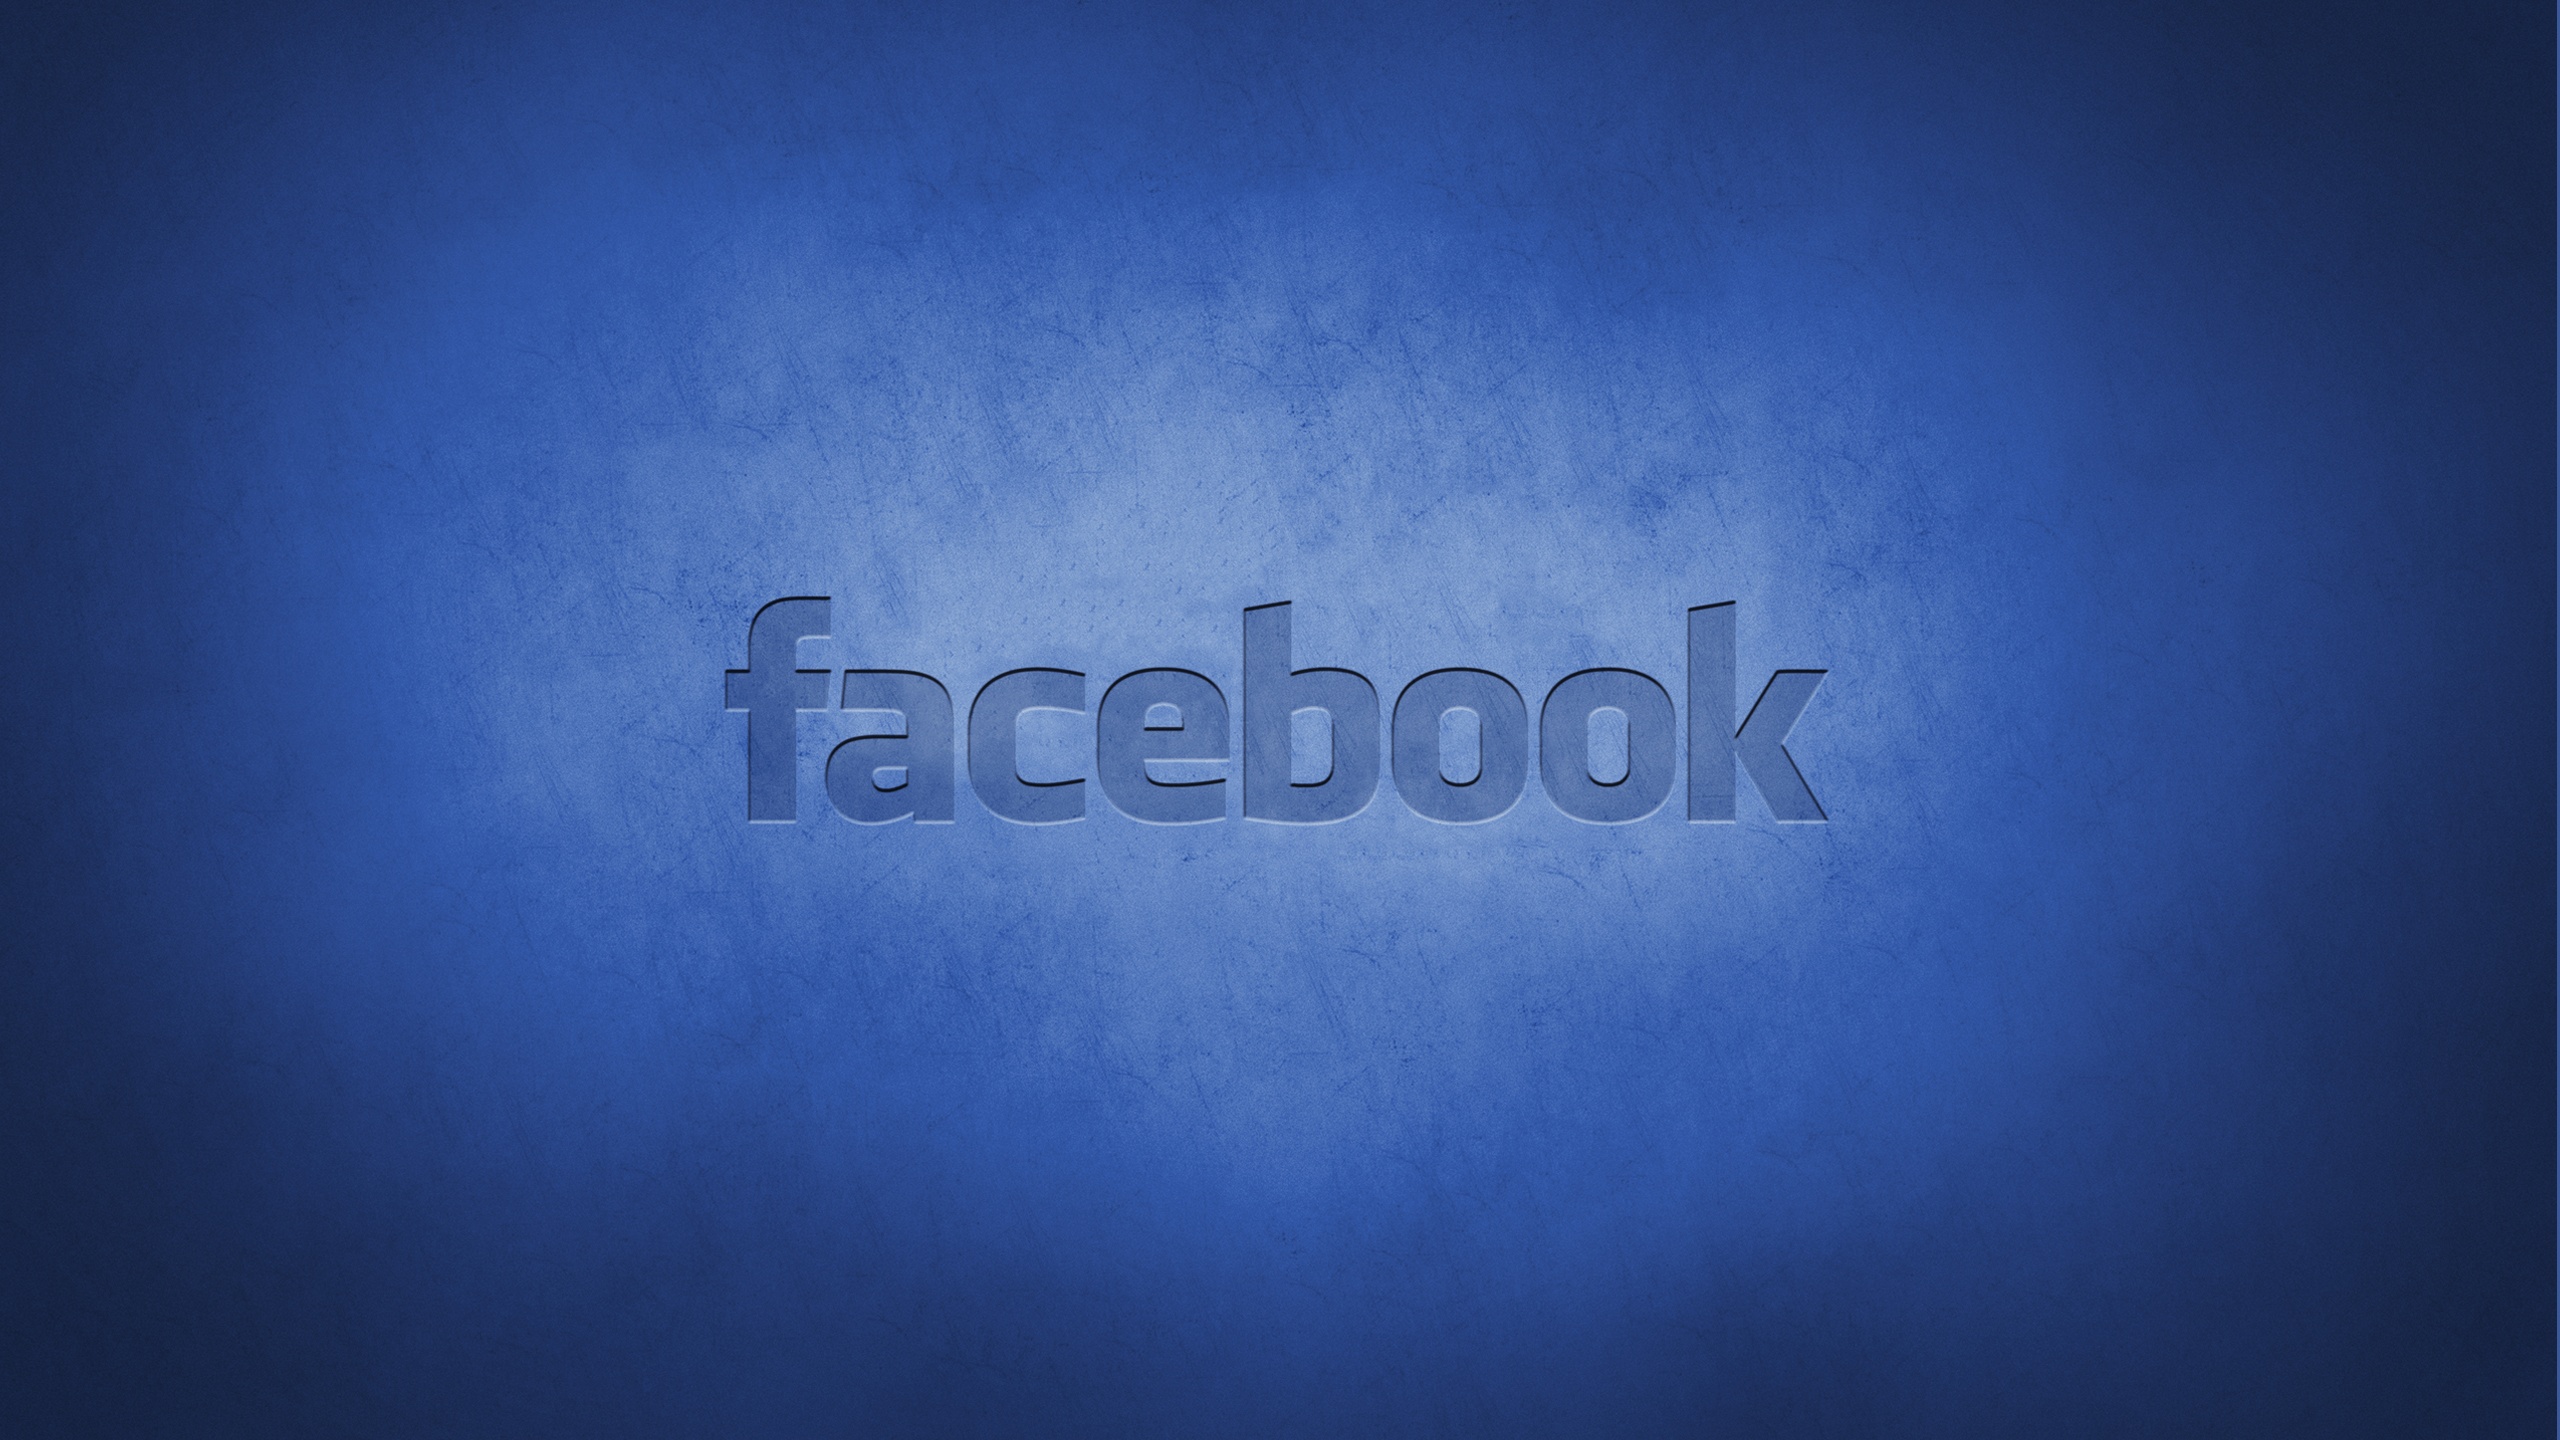 descarga de fondos de pantalla de facebook,azul,texto,cielo,fuente,azul eléctrico